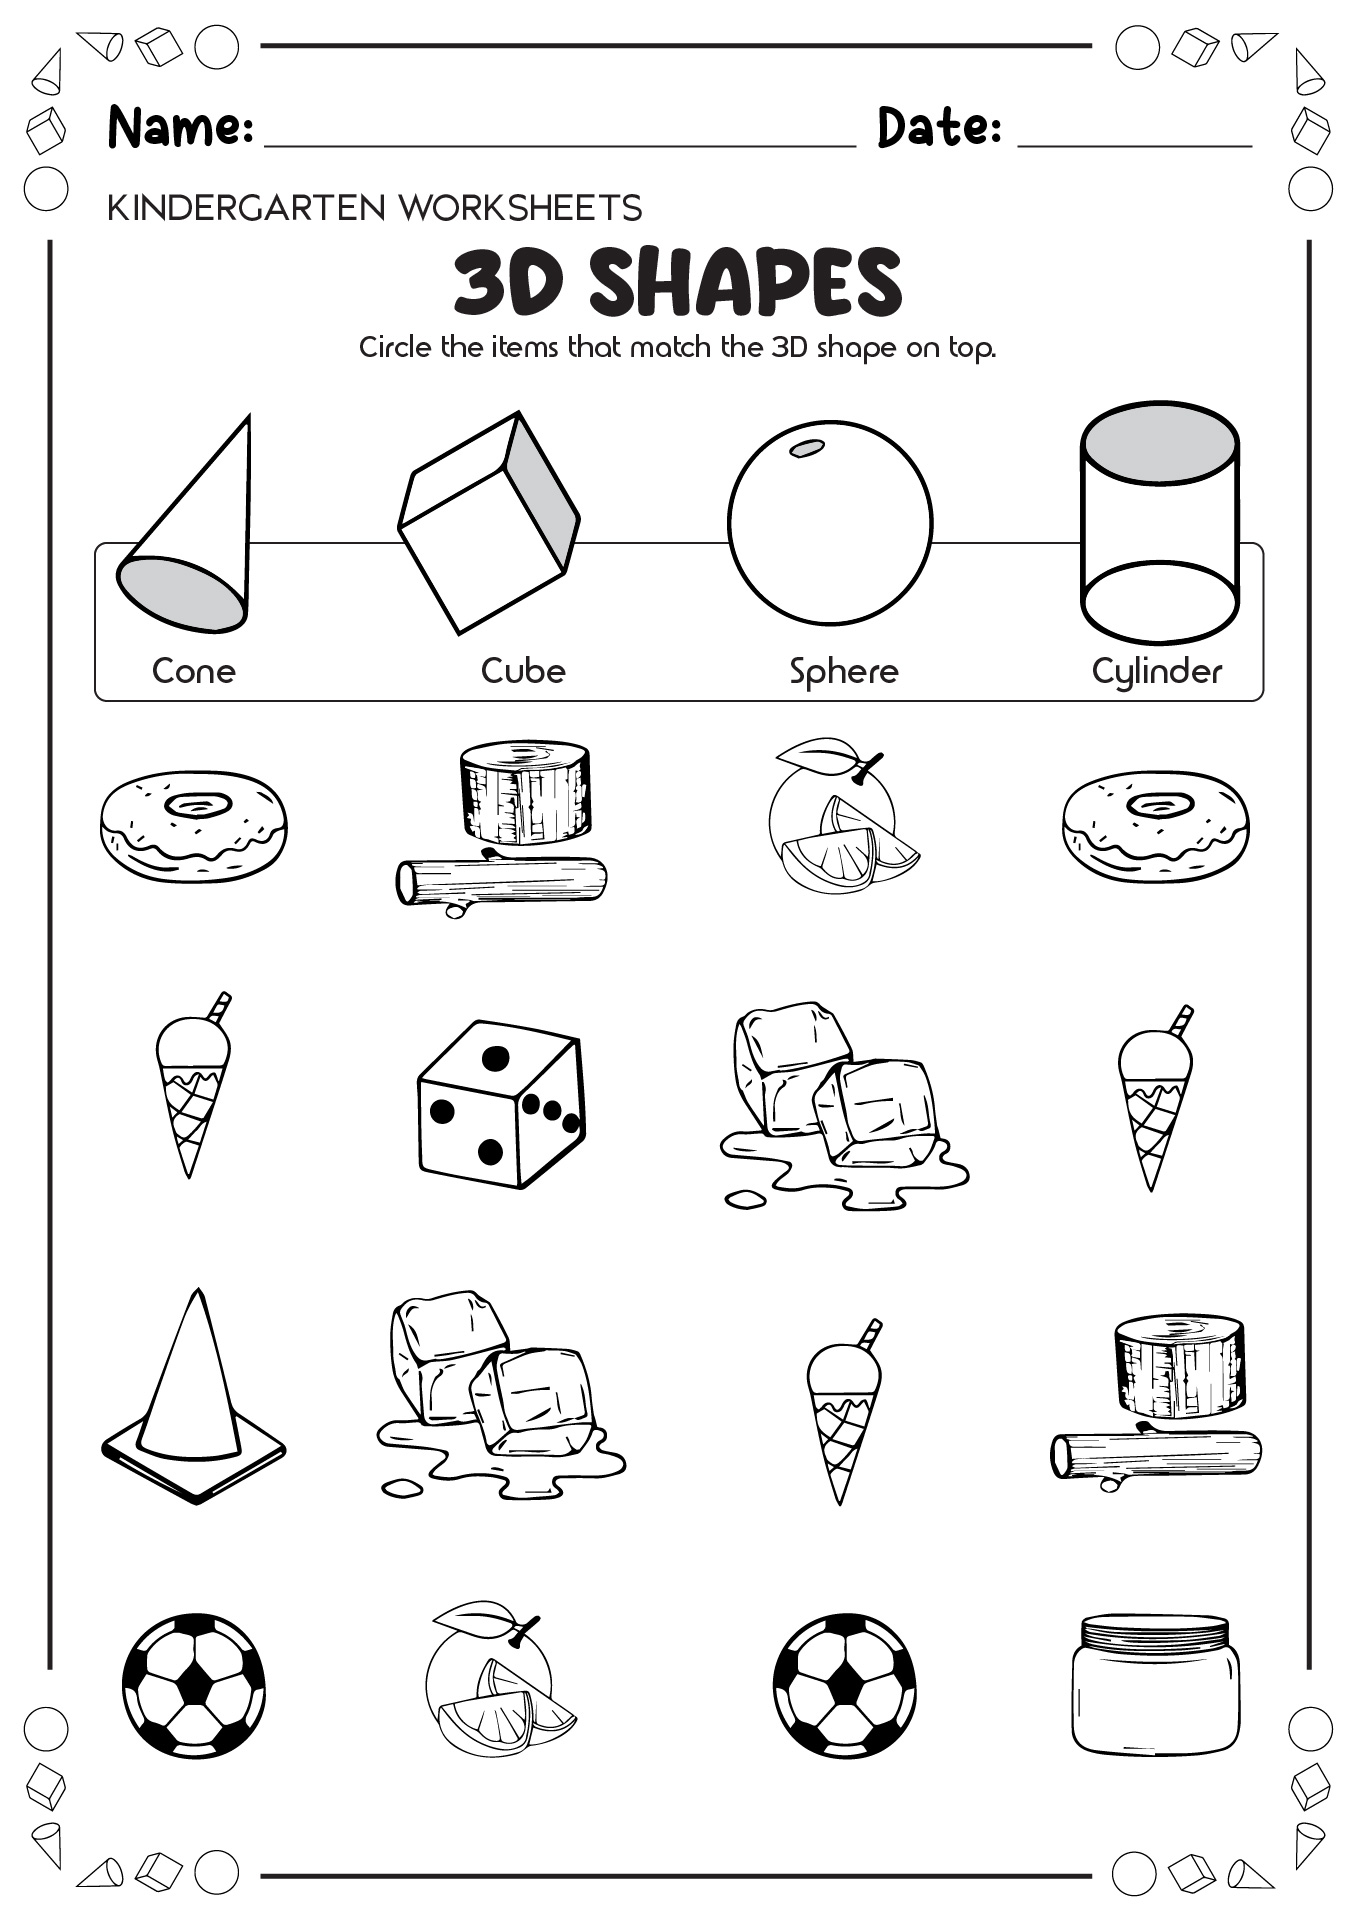 Kindergarten Worksheets 3D Shapes Printables Image